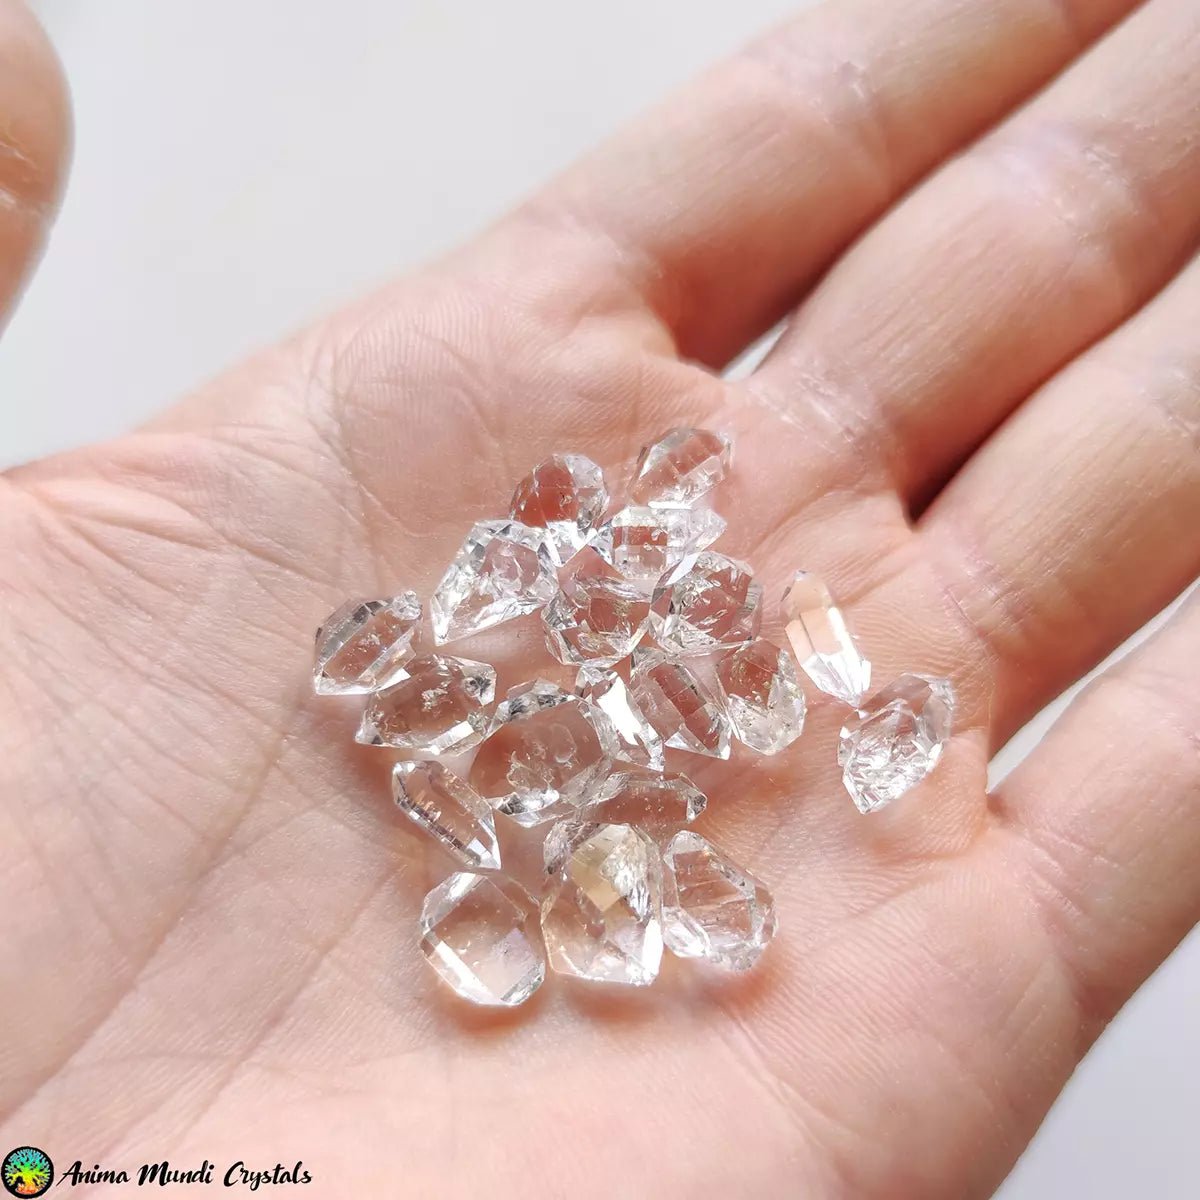 Meer dan 10 mm diamanten kwartskristallen - Anima Mundi-kristallen